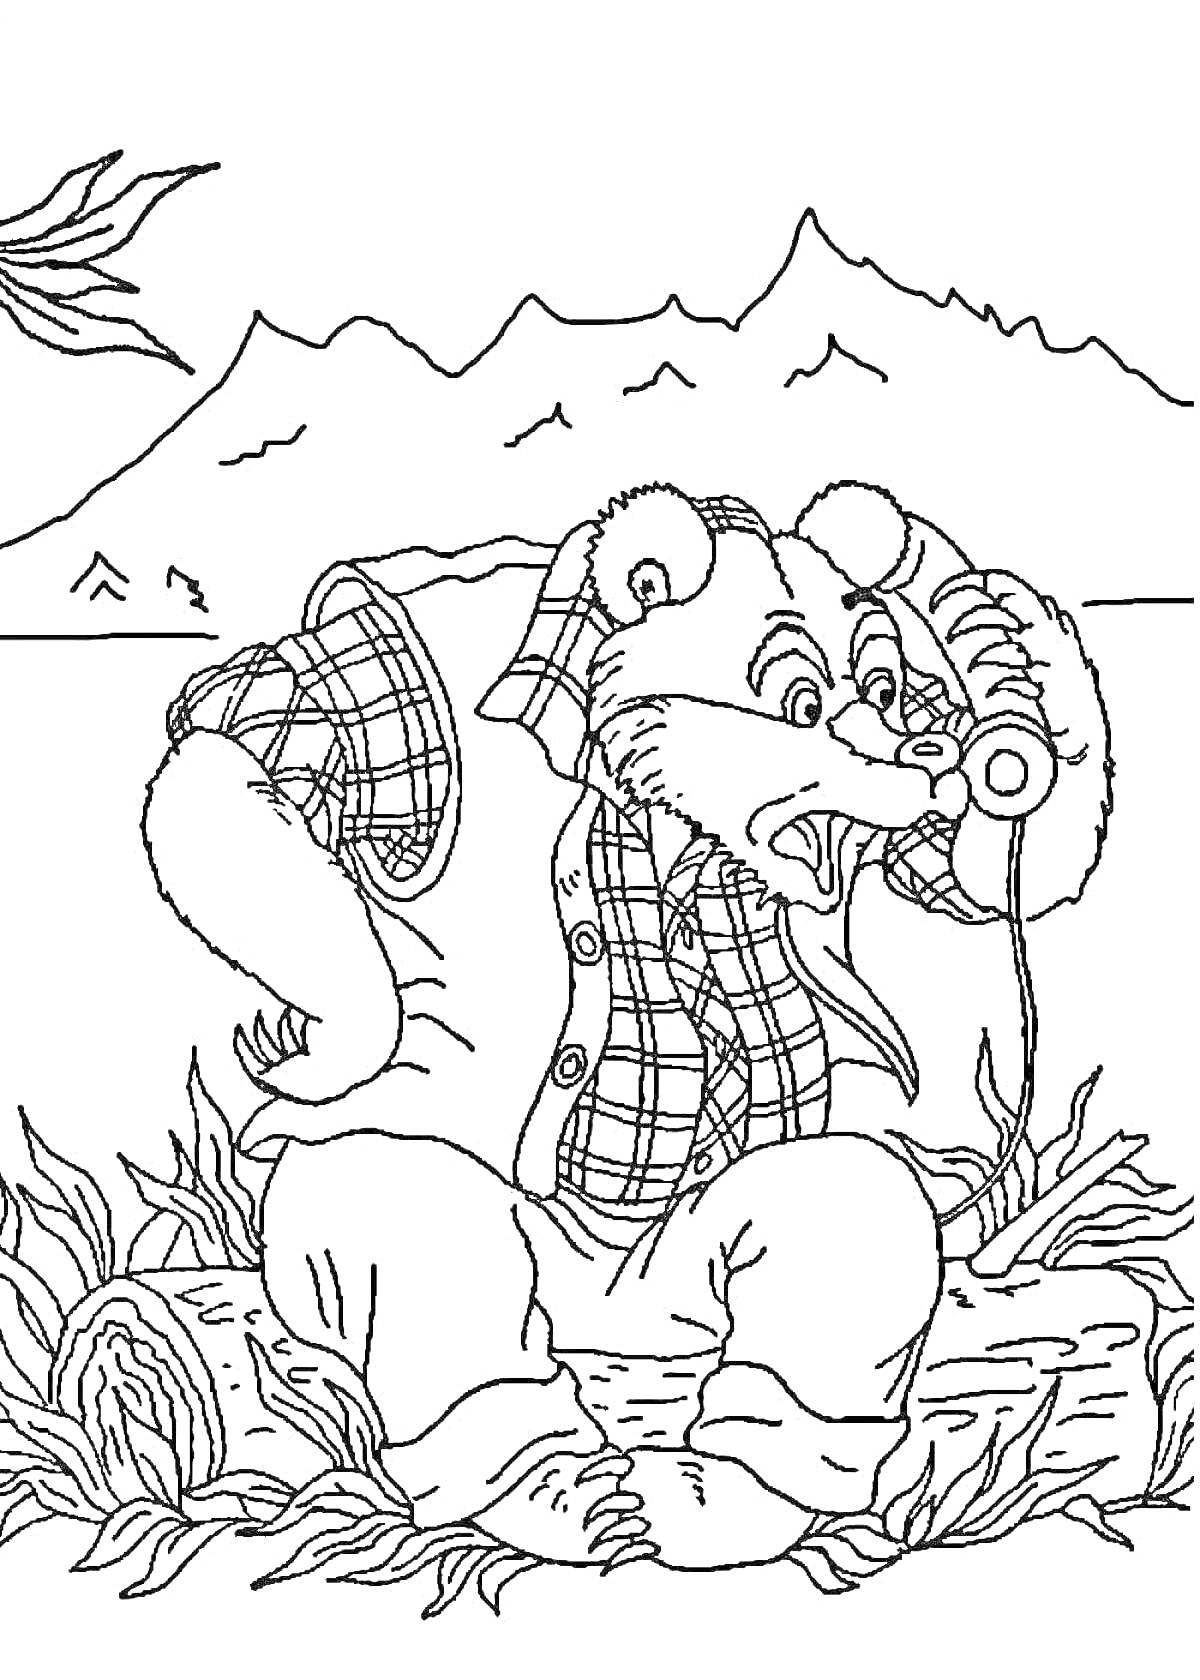 Раскраска Медведь, сидящий на пне, одетый в рубашку, разговаривает по телефону, на фоне гор и деревьев.